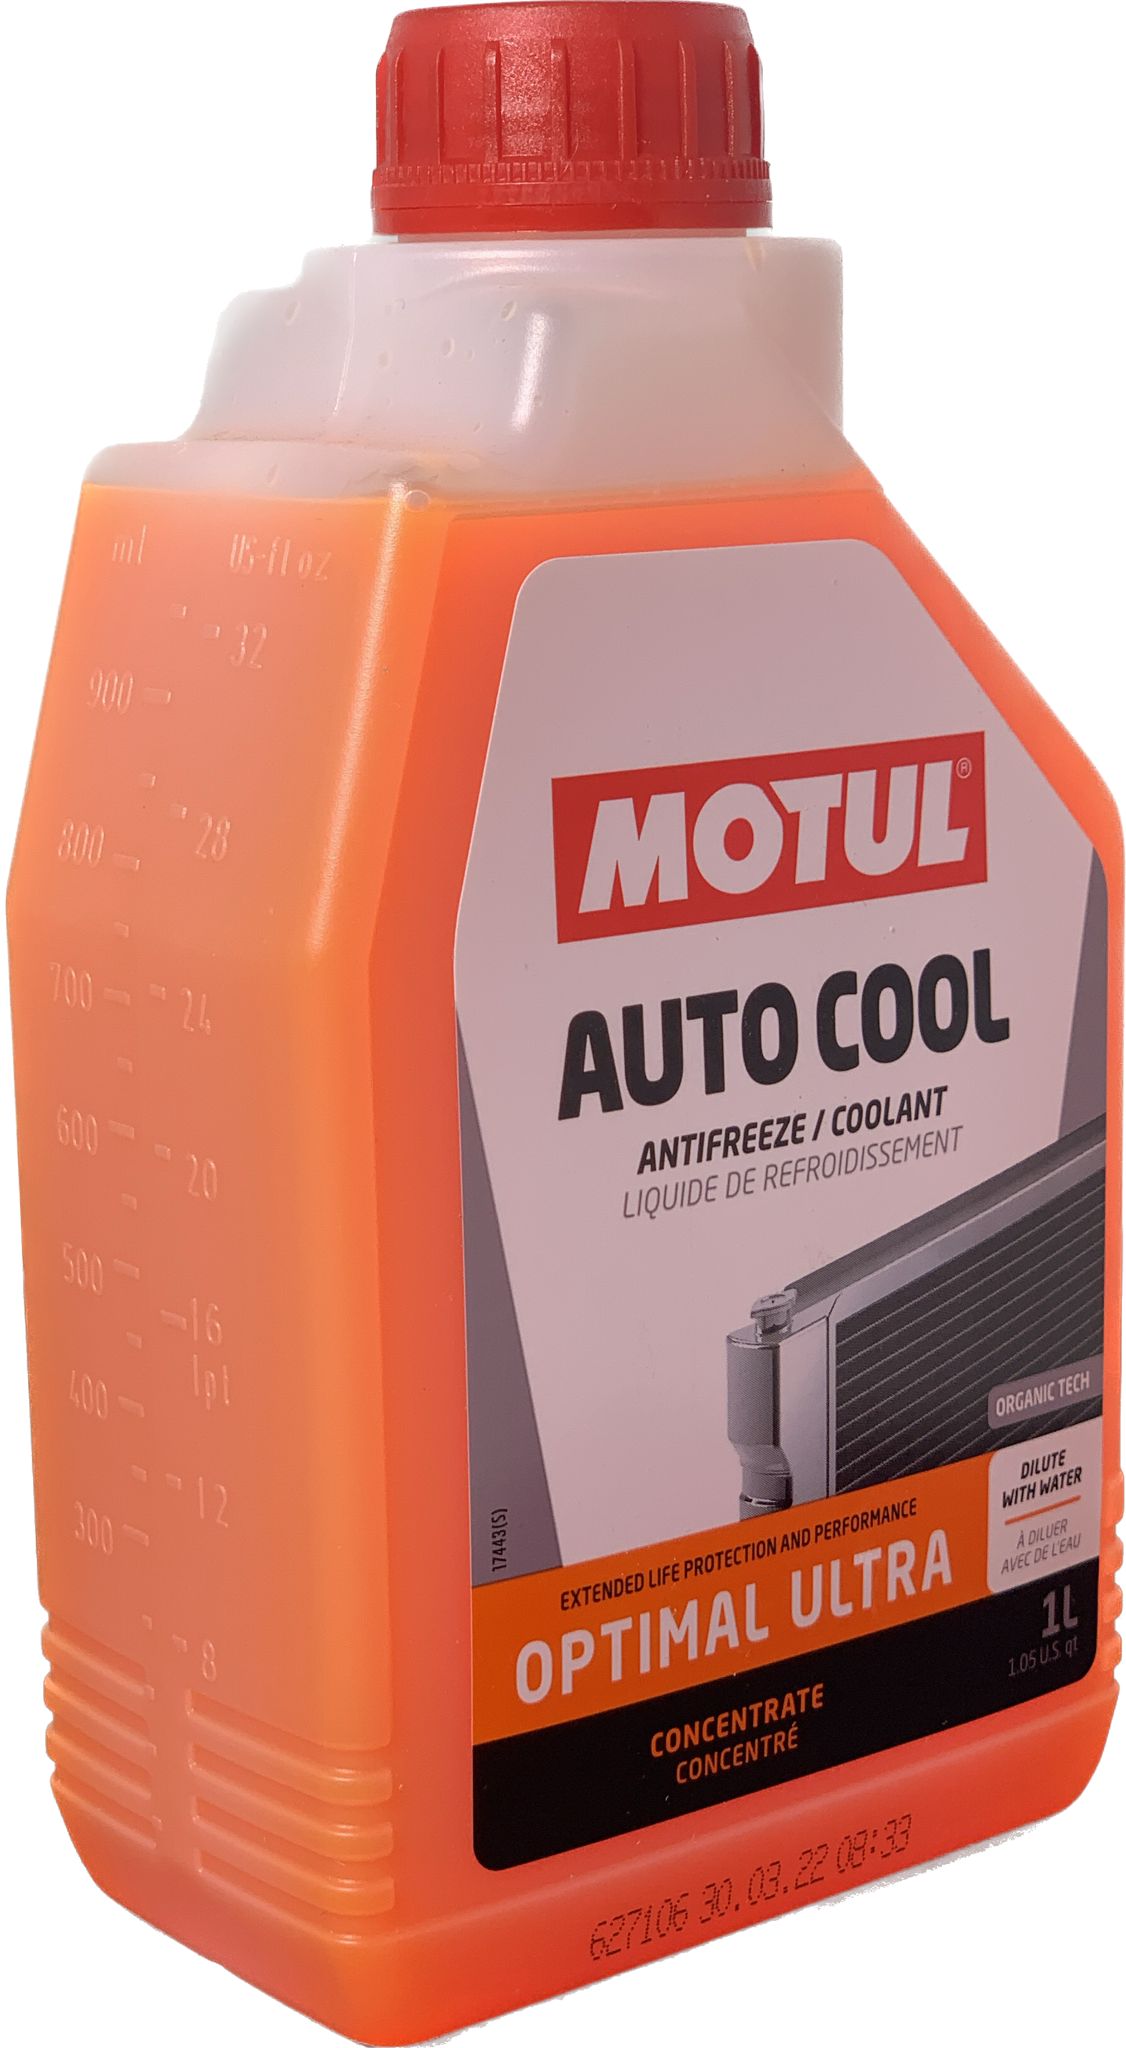 Anticongelante MOTUL AUTO COOL OPTIMAL ULTRA 109117,1 Litro